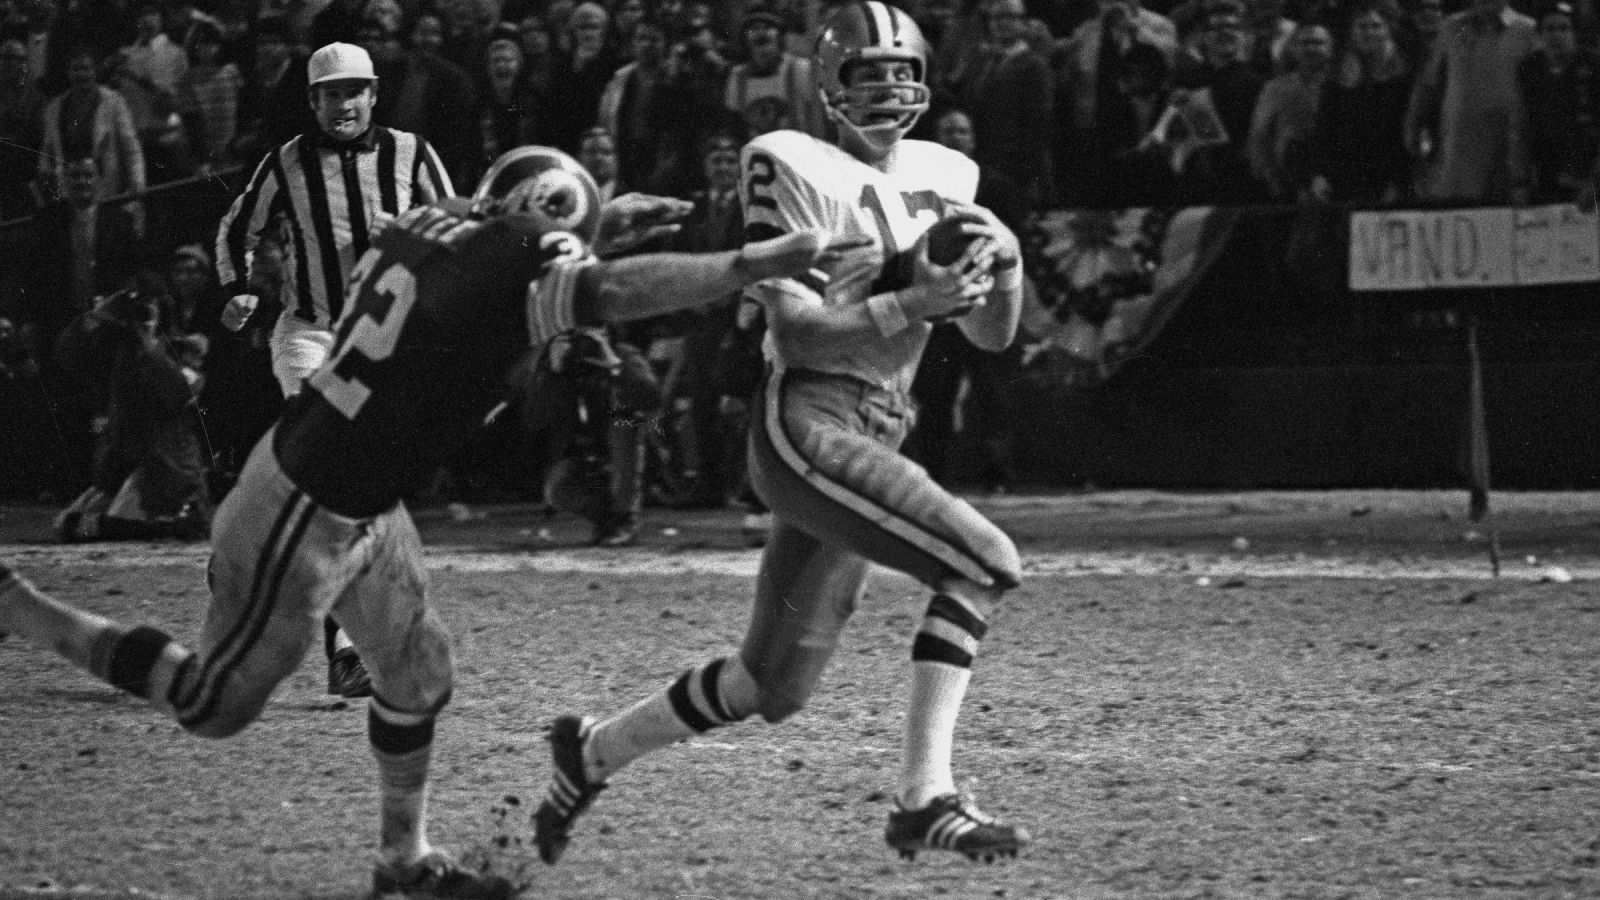 
                <strong>1970er: Die Roger-Staubach-Ära - Cowboys-Dynastie mit zwei Super Bowls</strong><br>
                1970 fand das erste Playoff-Spiel zwischen beiden Teams statt. In einem umkämpften NFC Championship Game gewannen die Cowboys auswärts mit 17:10, verloren aber Super Bowl V unter Head Coach Tom Landry gegen die Baltimore Colts. Jener Tom Landry prägte mit seinem neuen Starting Quarterback Roger Staubach daraufhin eine Ära. 1971 kam es wieder zum NFC Title Game zwischen Cowboys und 49ers, wieder behielten die Cowboys die Oberhand (14:3). Den anschließenden Super Bowl gewannen die Cowboys gegen die Miami Dolphins. Von sieben Aufeinandertreffen gewannen die Cowboys in den 70er sechs, 1977 gab es einen weiteren Sieg im Super Bowl, ehe Roger Staubach am Ende der Saison 1979 seine Karriere beendete.
              